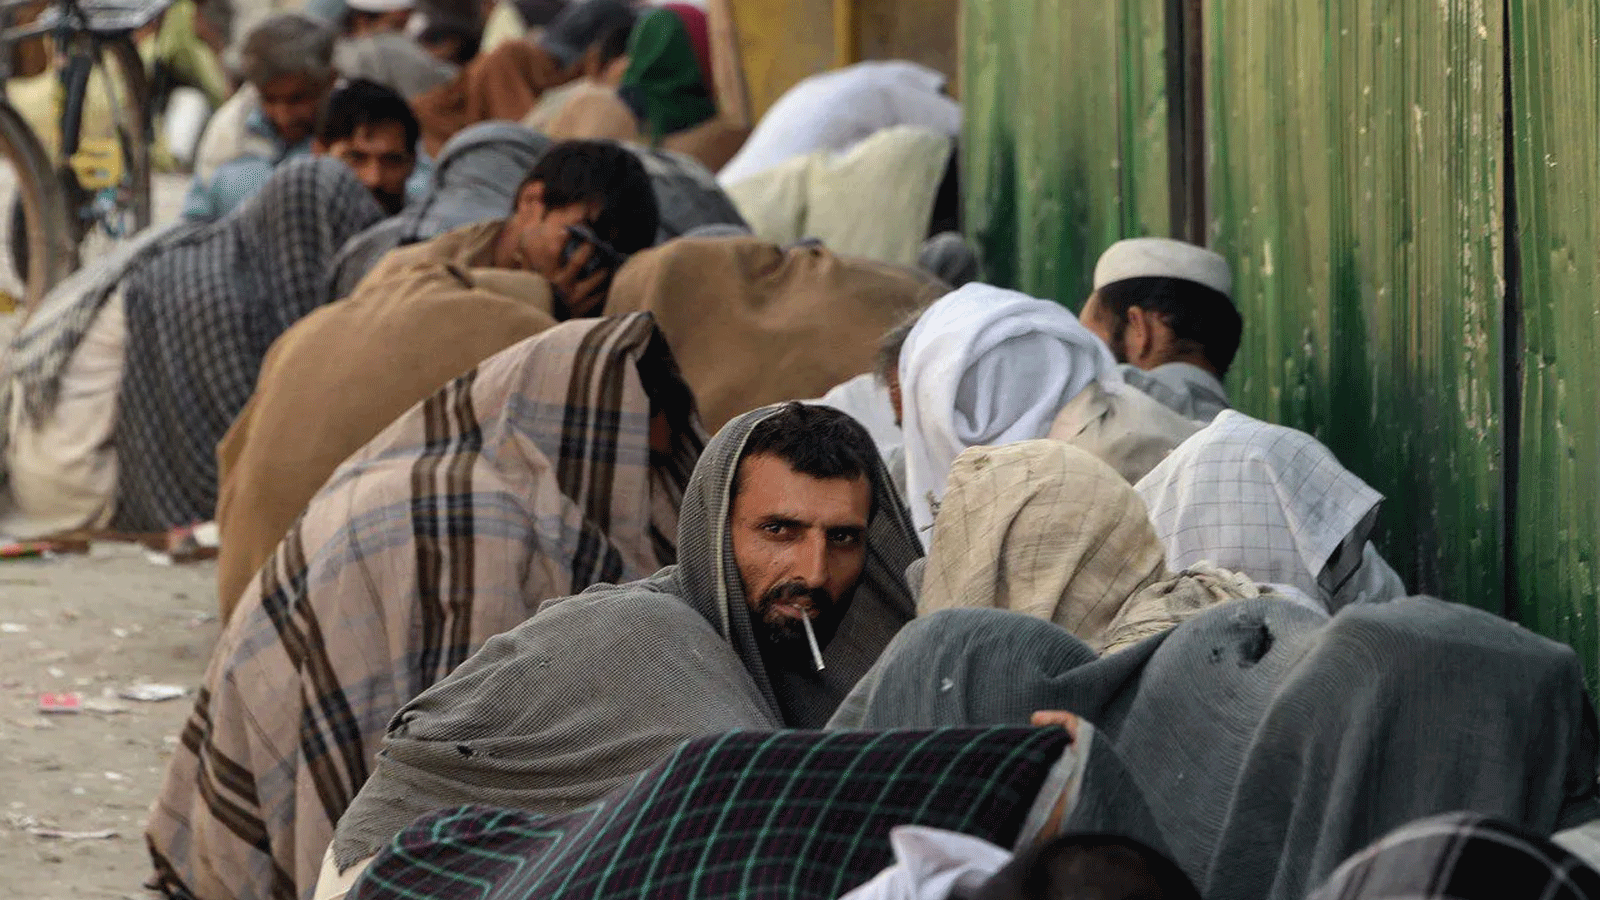 مدمنو المخدرات الأفغان يدخنون الهيروين في أحد شوارع جلال أباد، أفغانستان